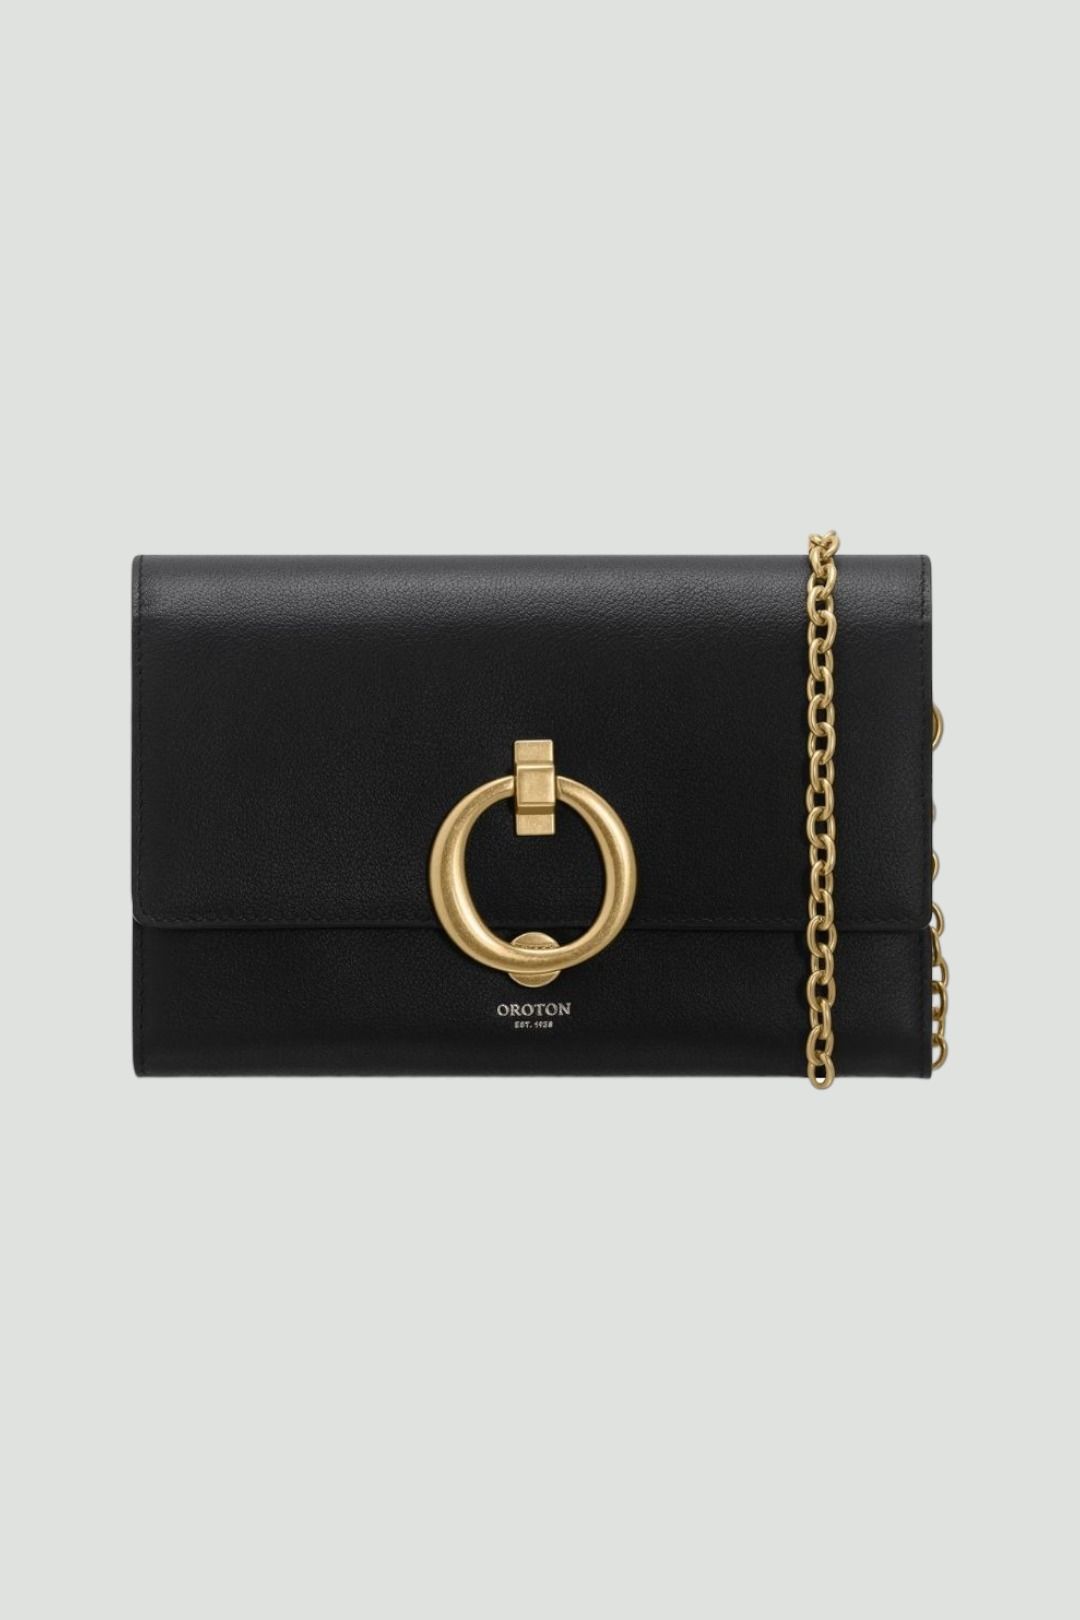 Oroton - Alexa Wallet Clutch in Black